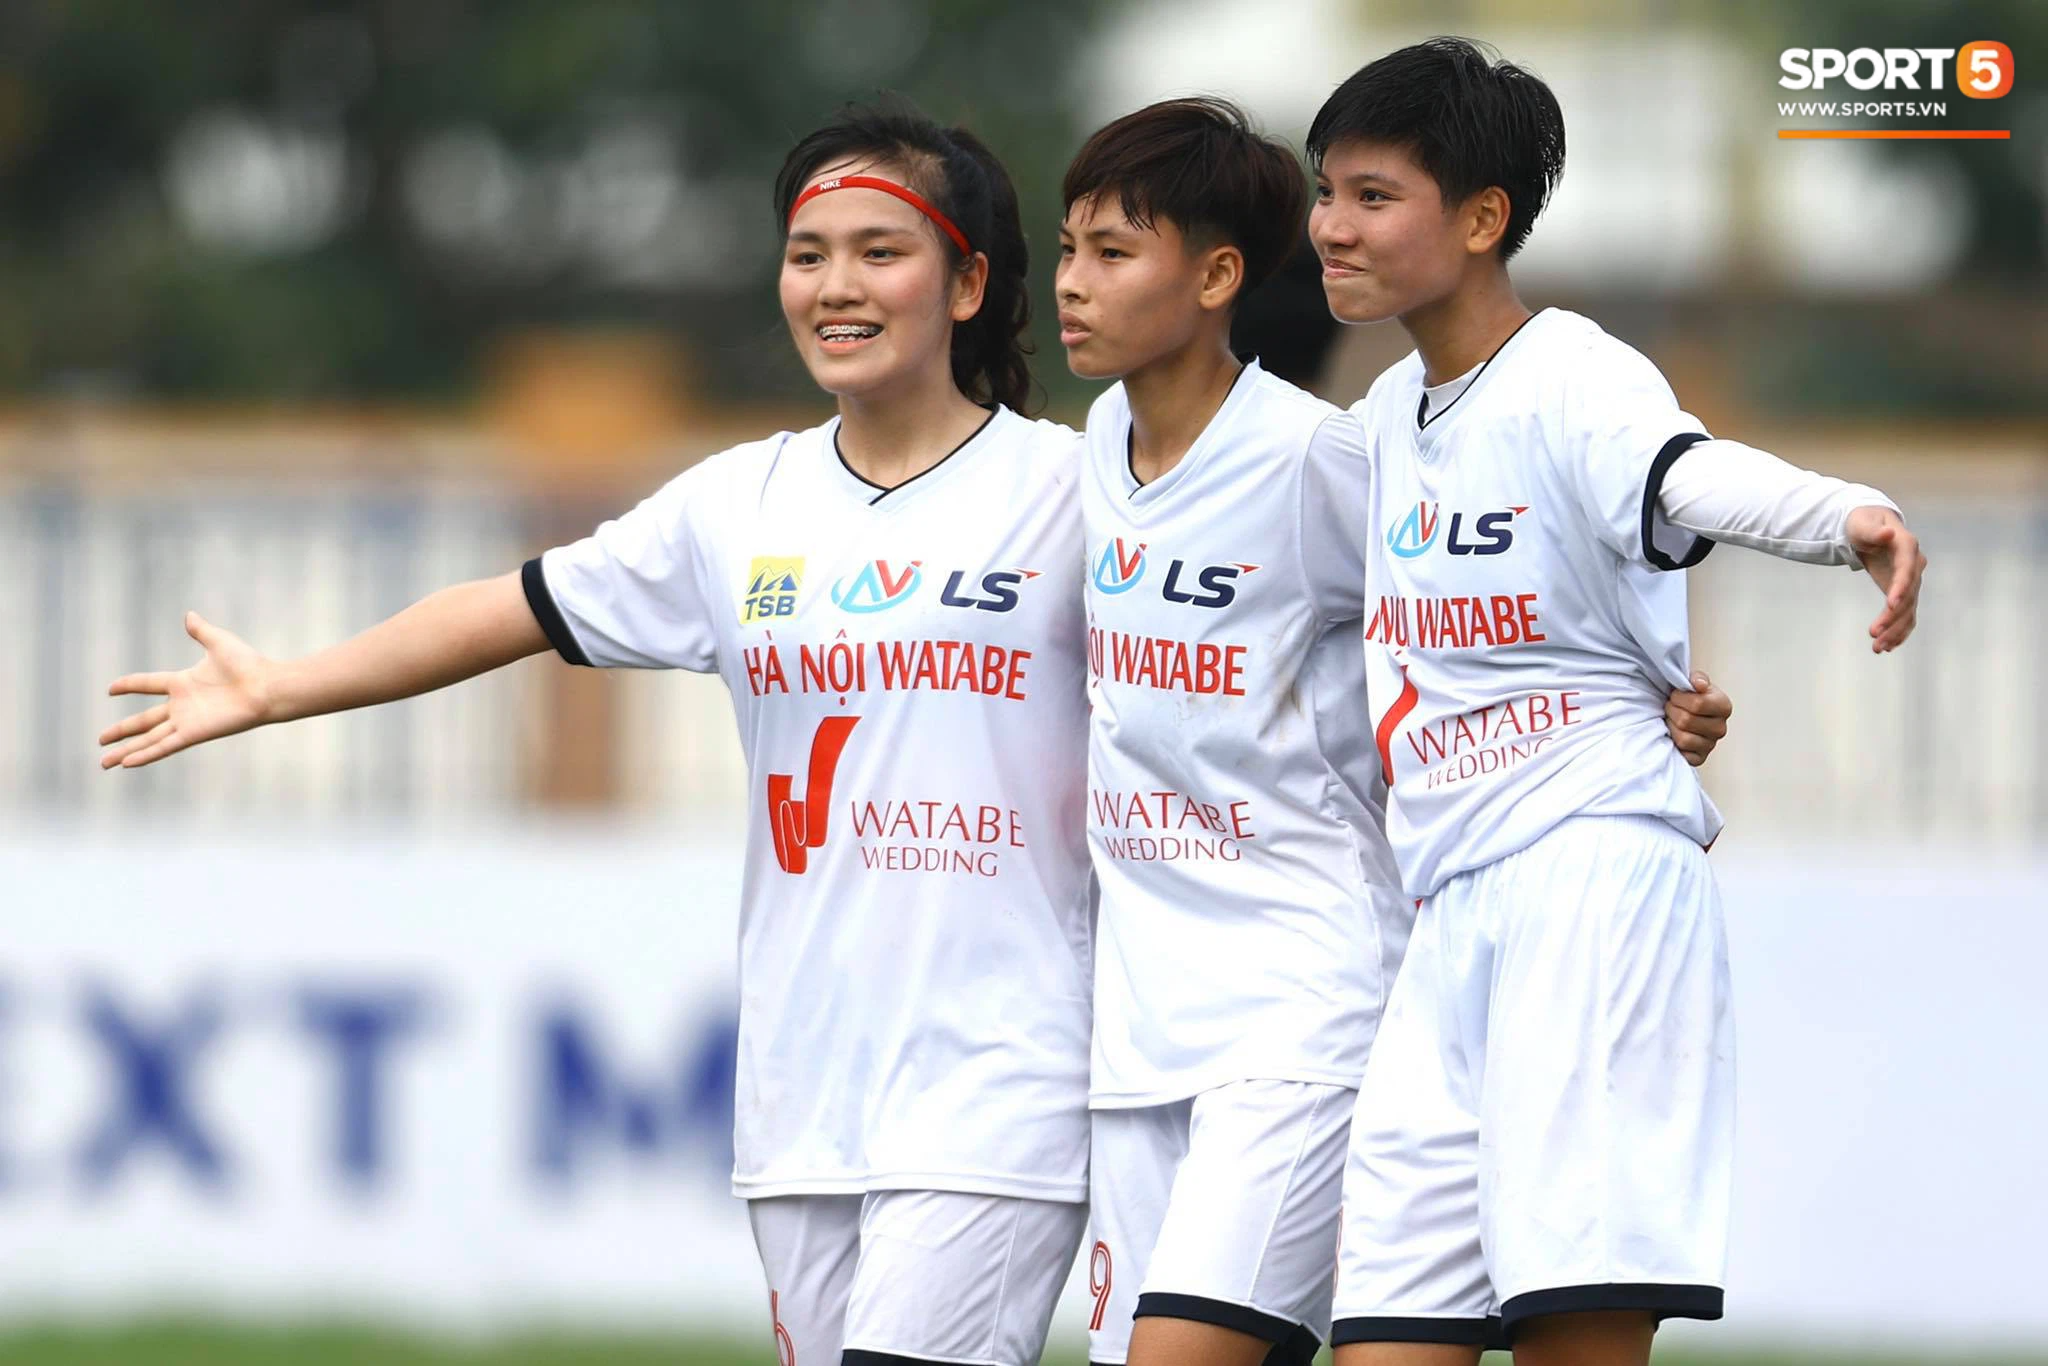 U19 nữ Hà Nội Watabe lấy lại phong độ, thắng đậm 4-0 trước U19 TP.HCM - Ảnh 3.